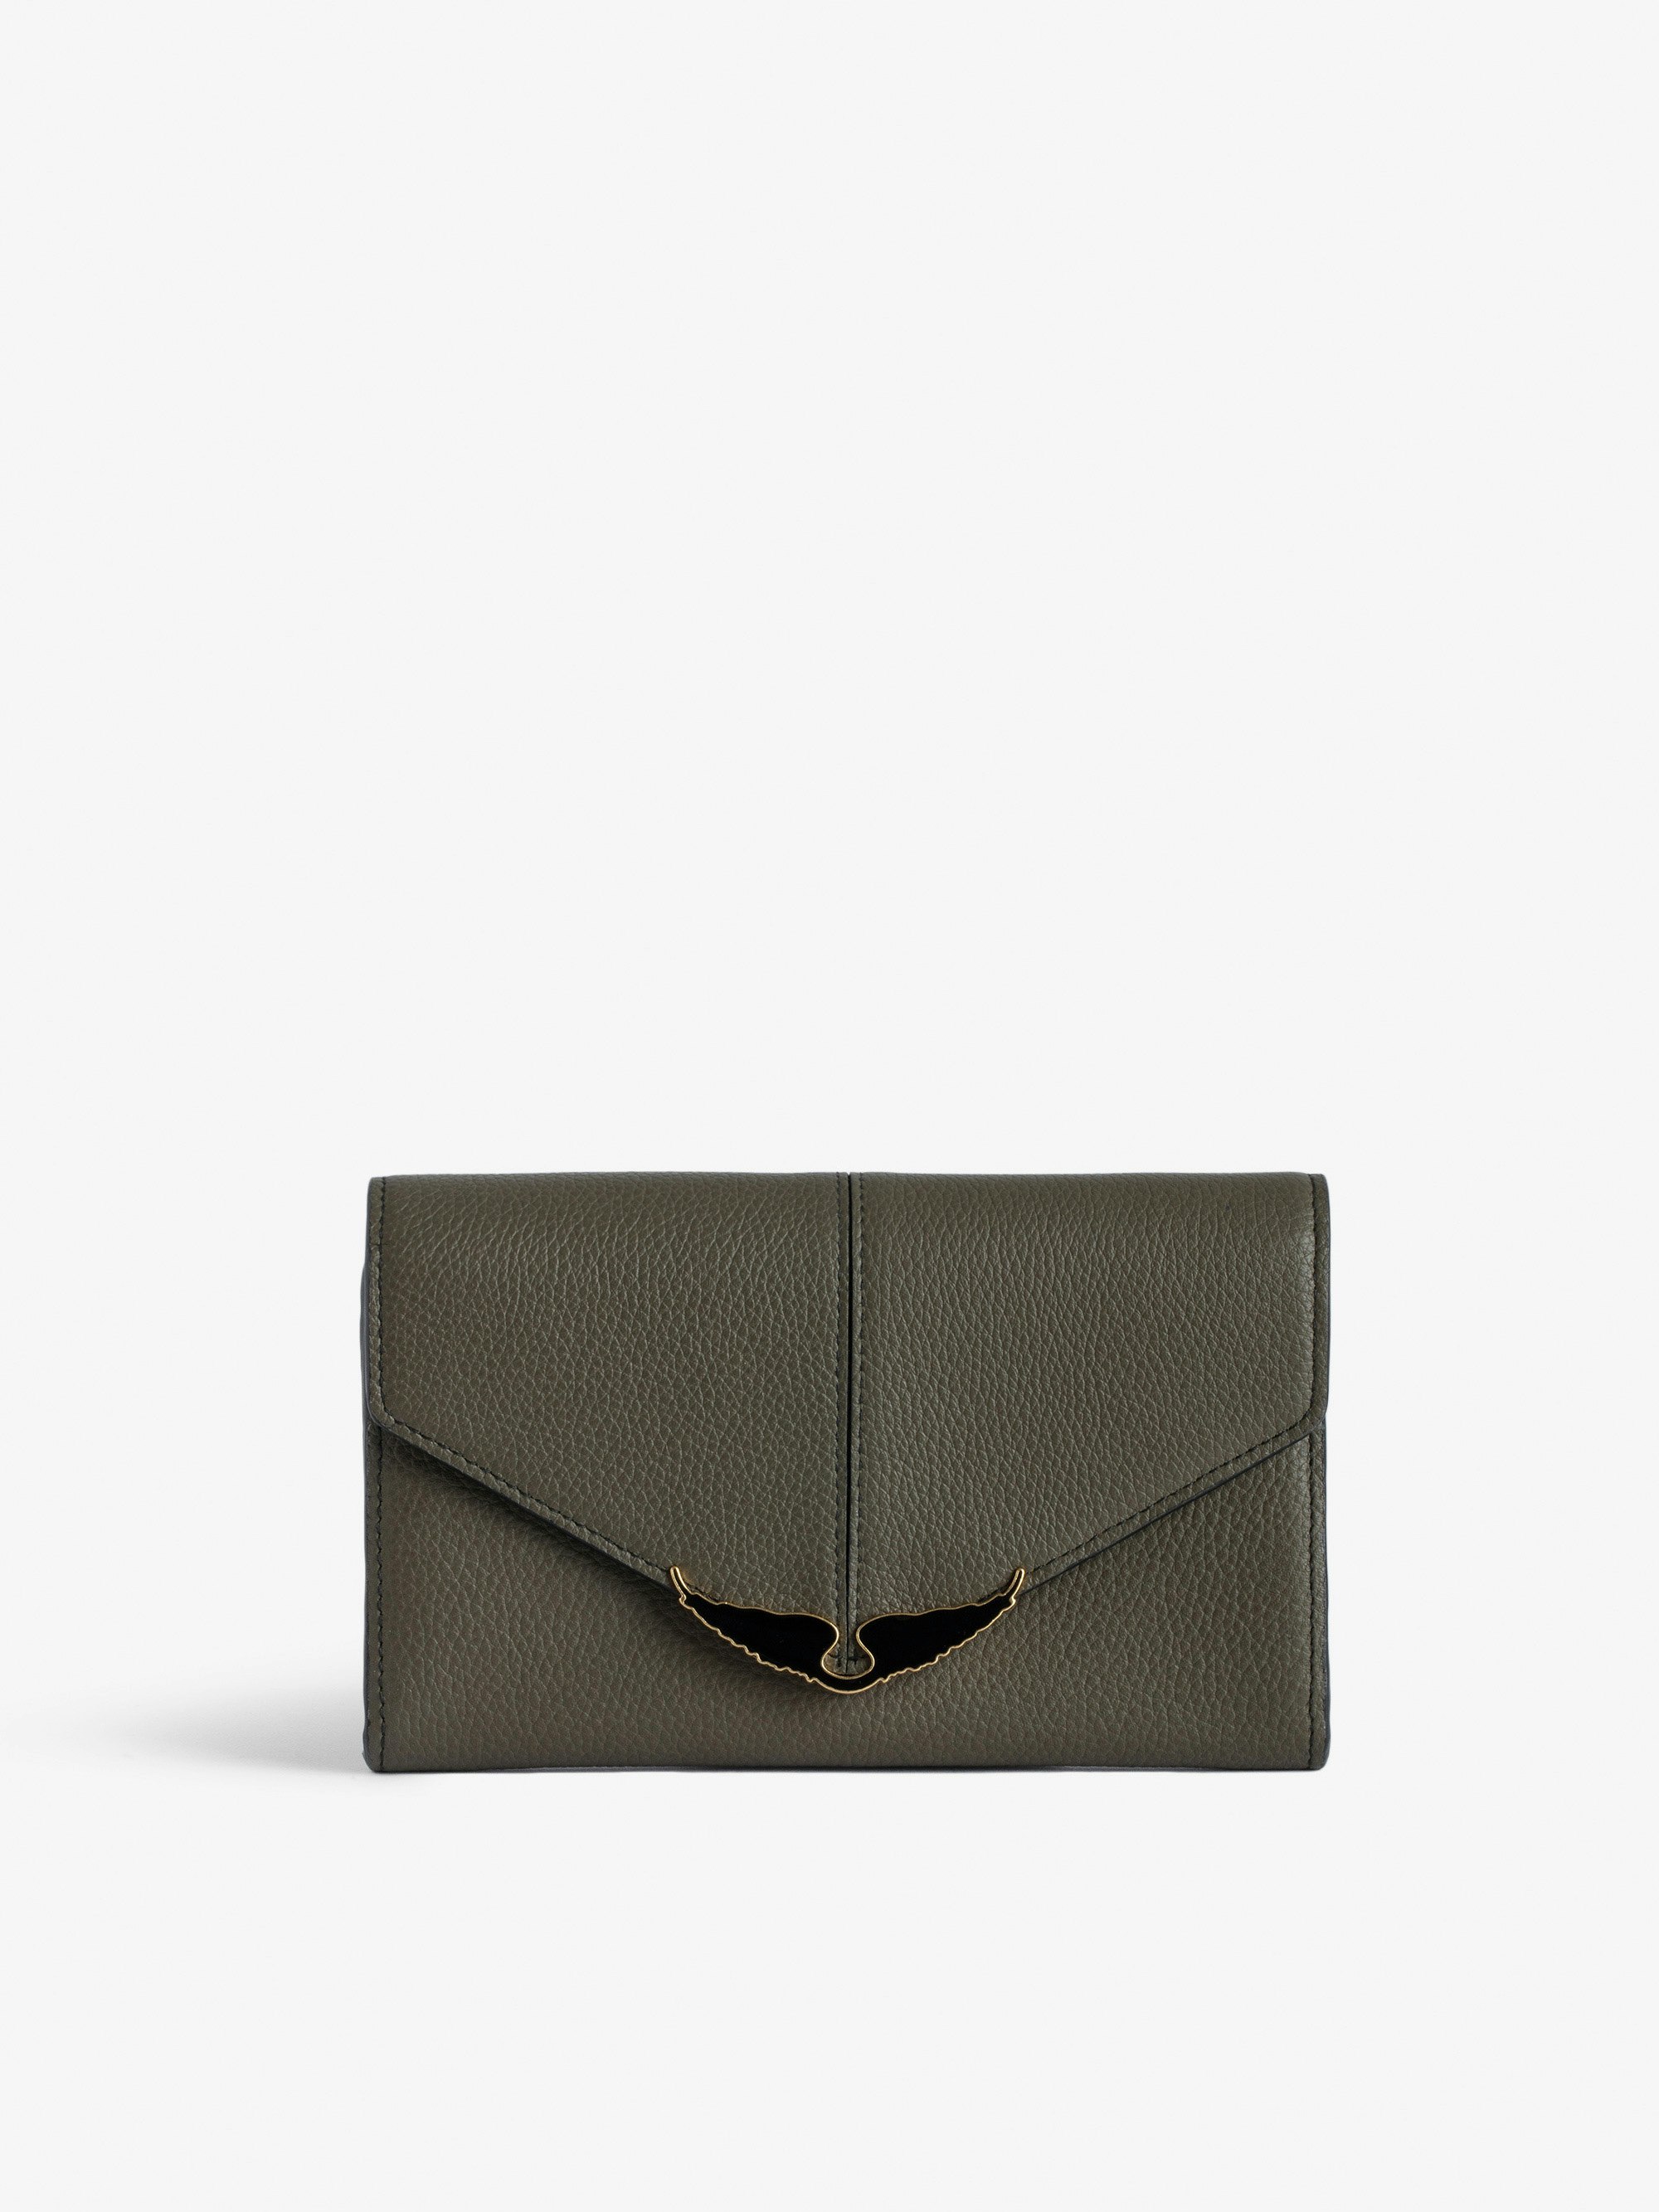 Brieftasche Borderline - Brieftasche aus genarbtem Lackleder in Khaki mit Flügel-Charm für Damen.